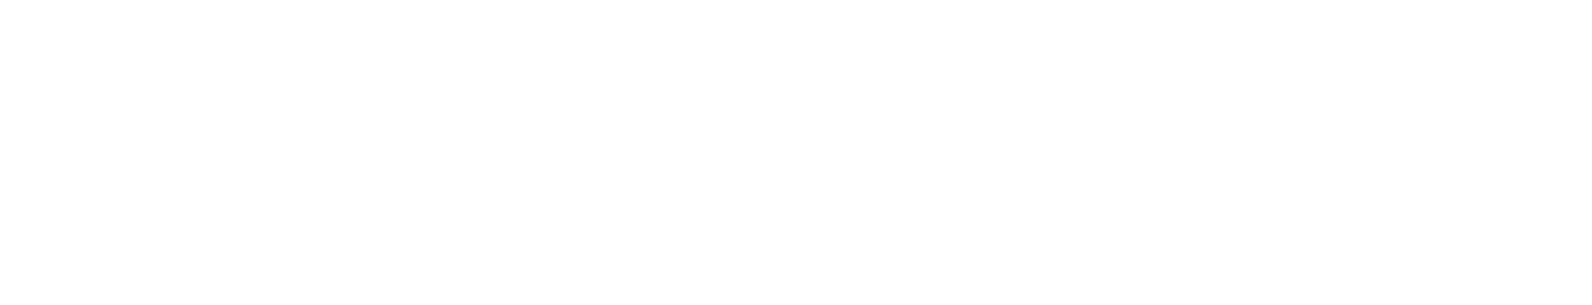 Adicet Bio Logo groß für dunkle Hintergründe (transparentes PNG)